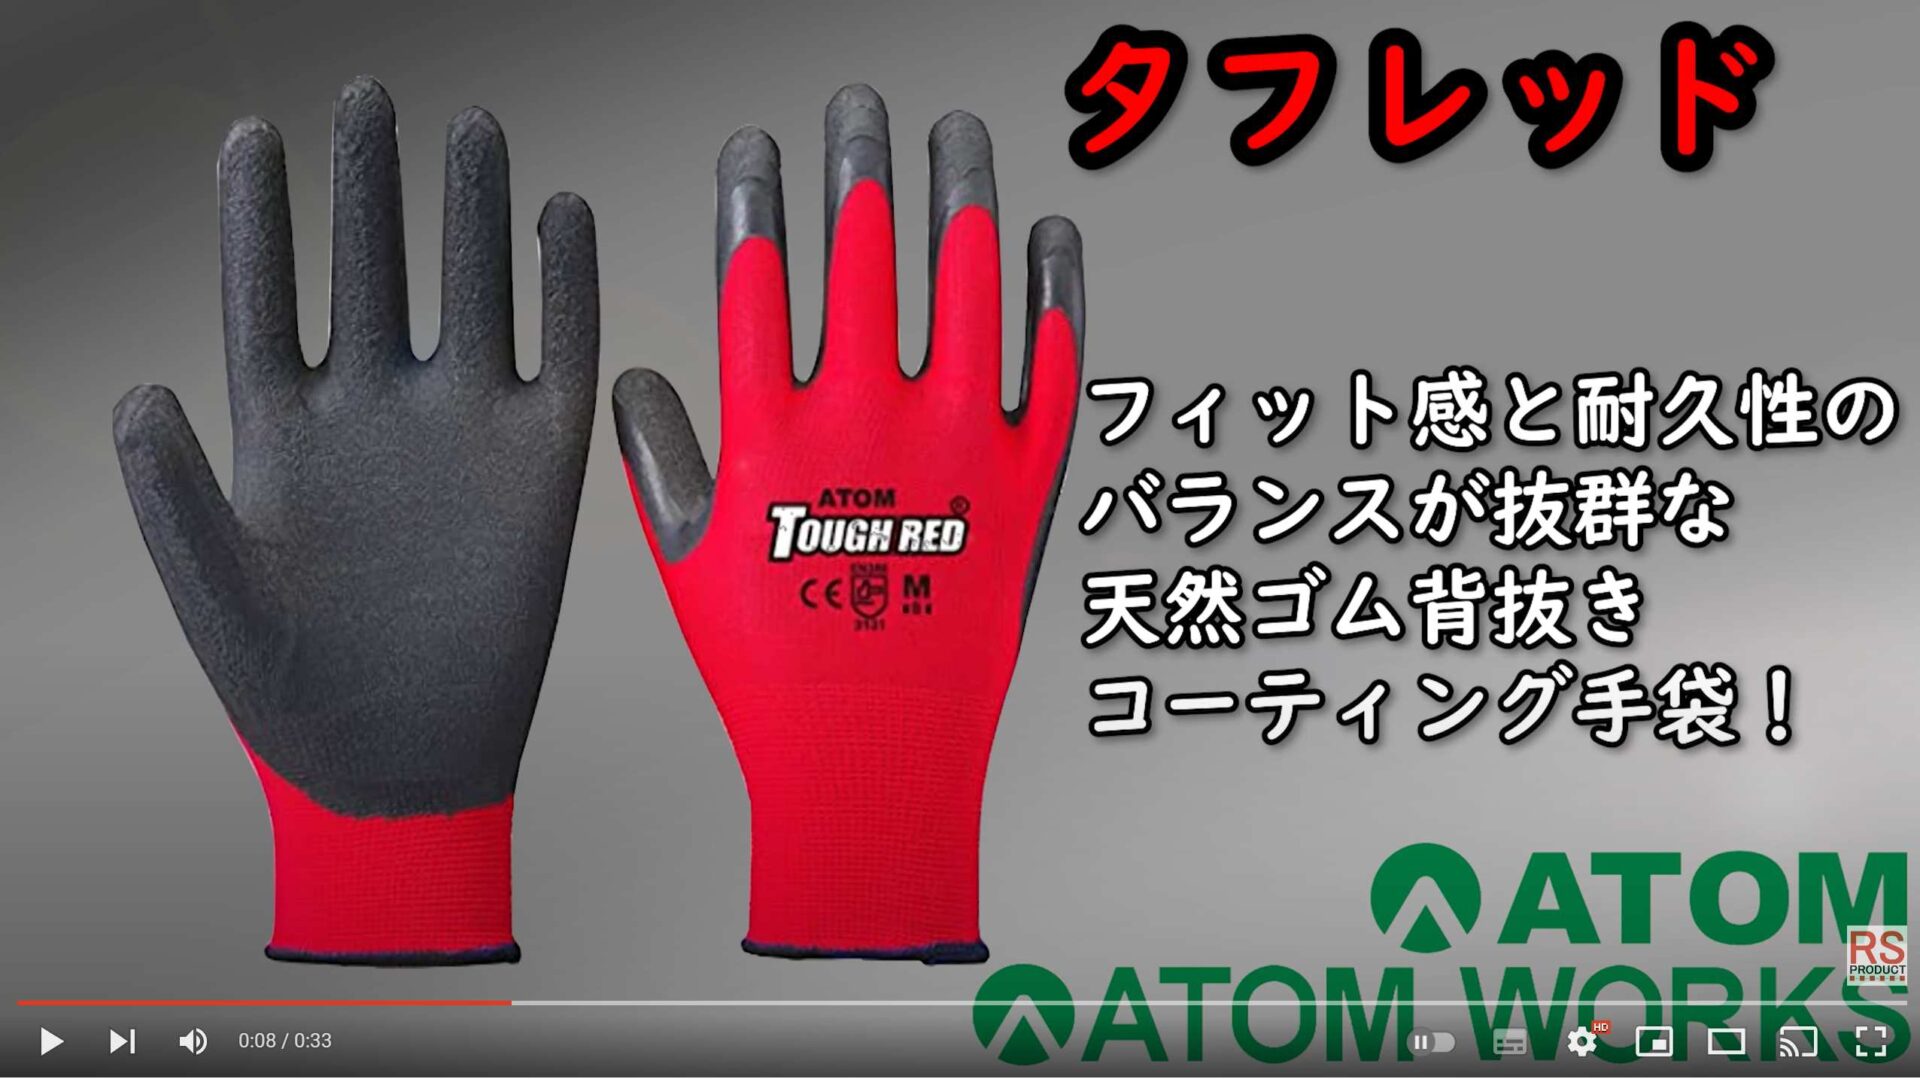 「タフレッド手袋」ATOM製品のPR動画を製作しました